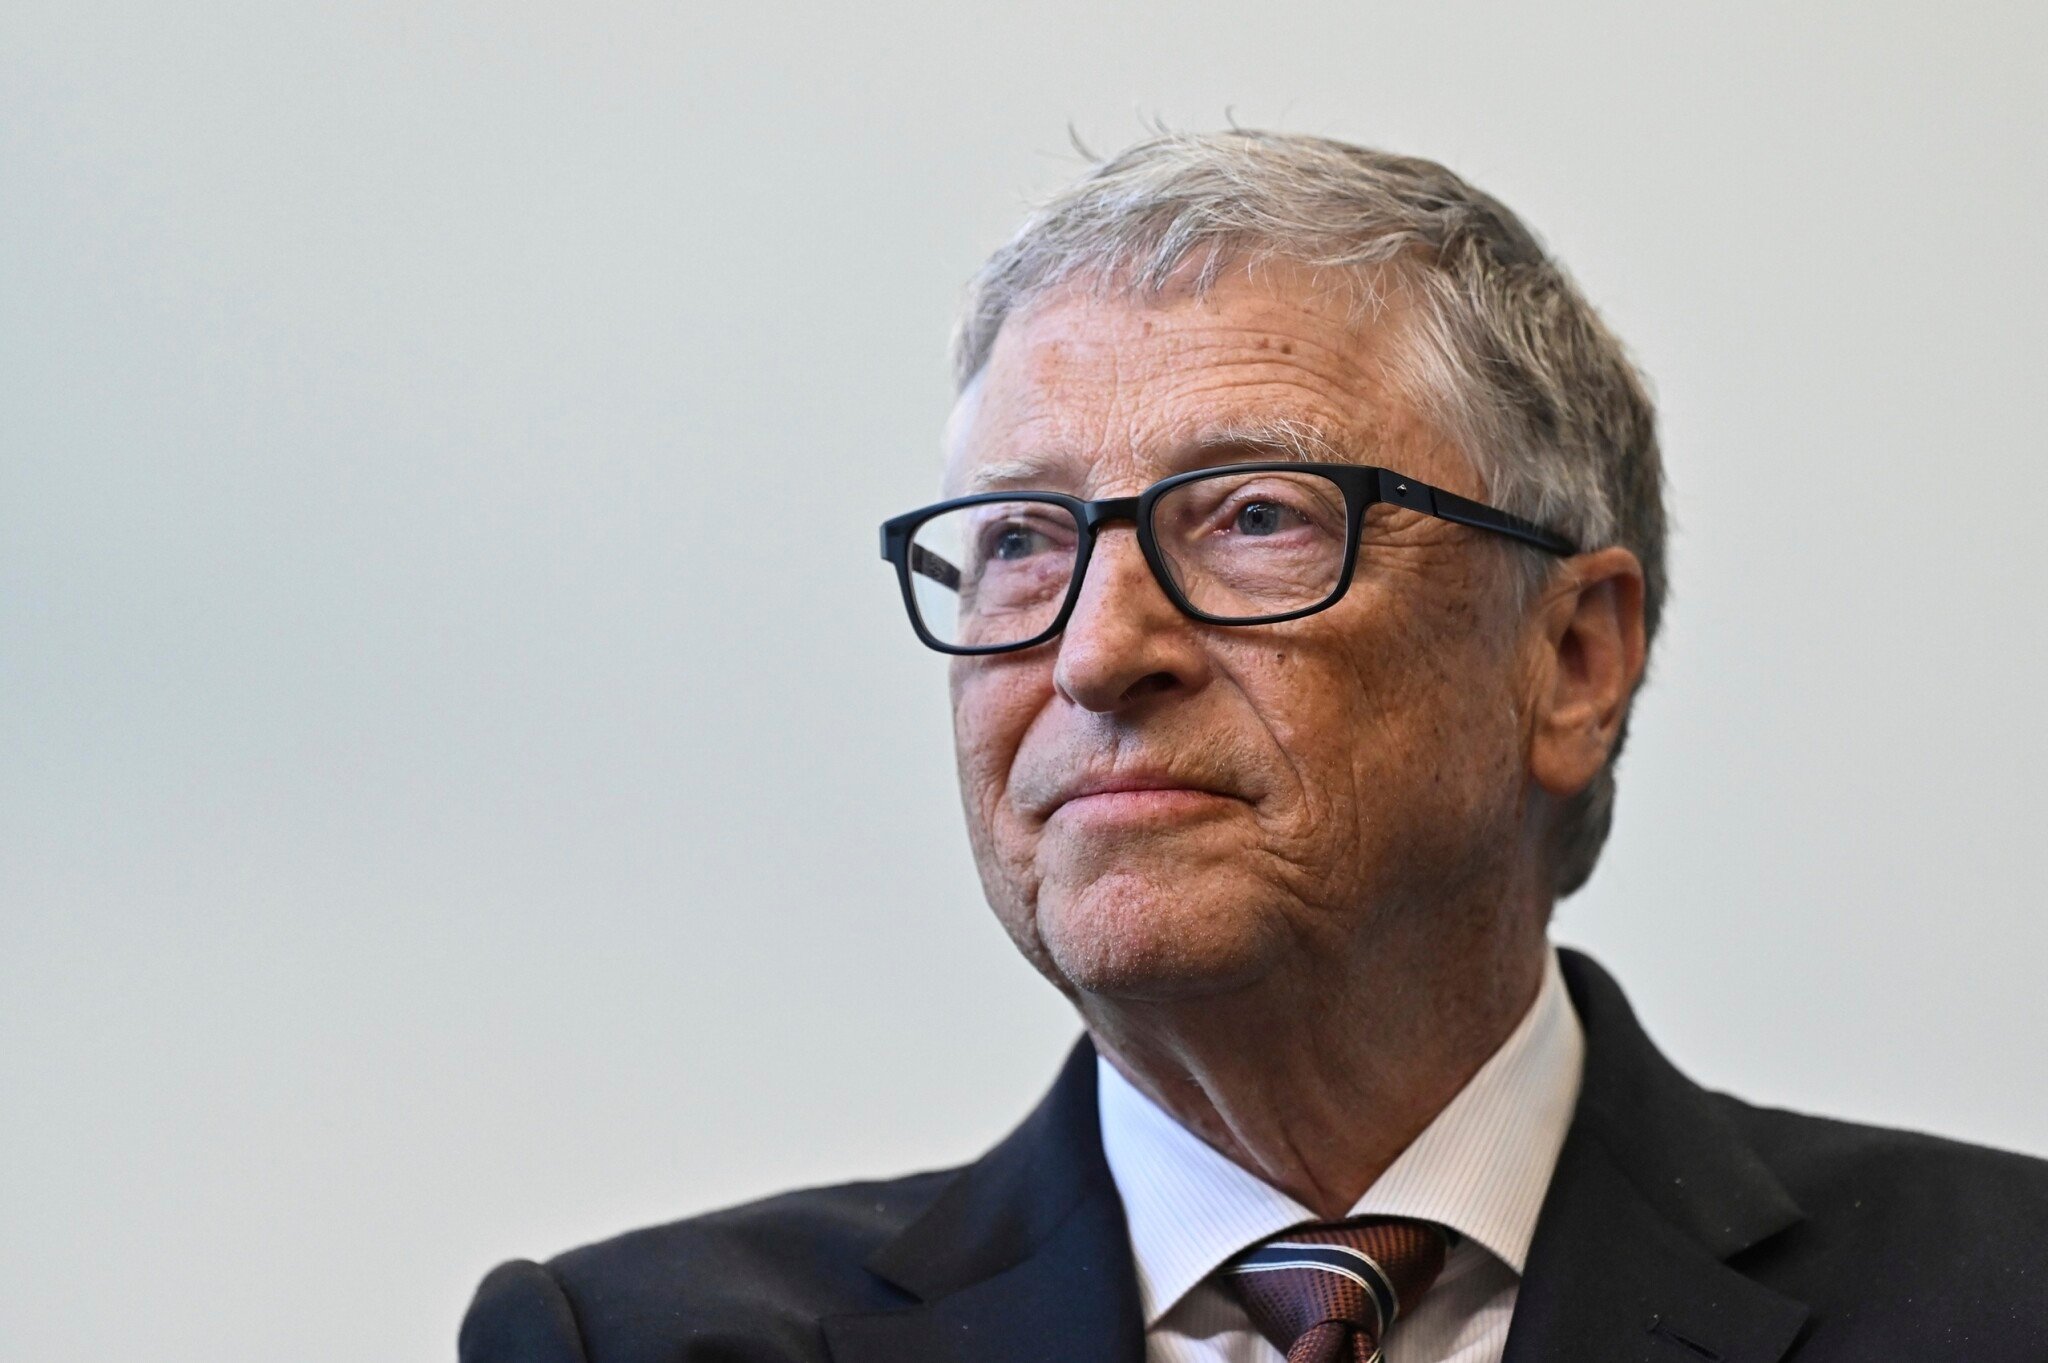 Cesta k miliardám. Čo všetko dnes patrí Billovi Gatesovi?